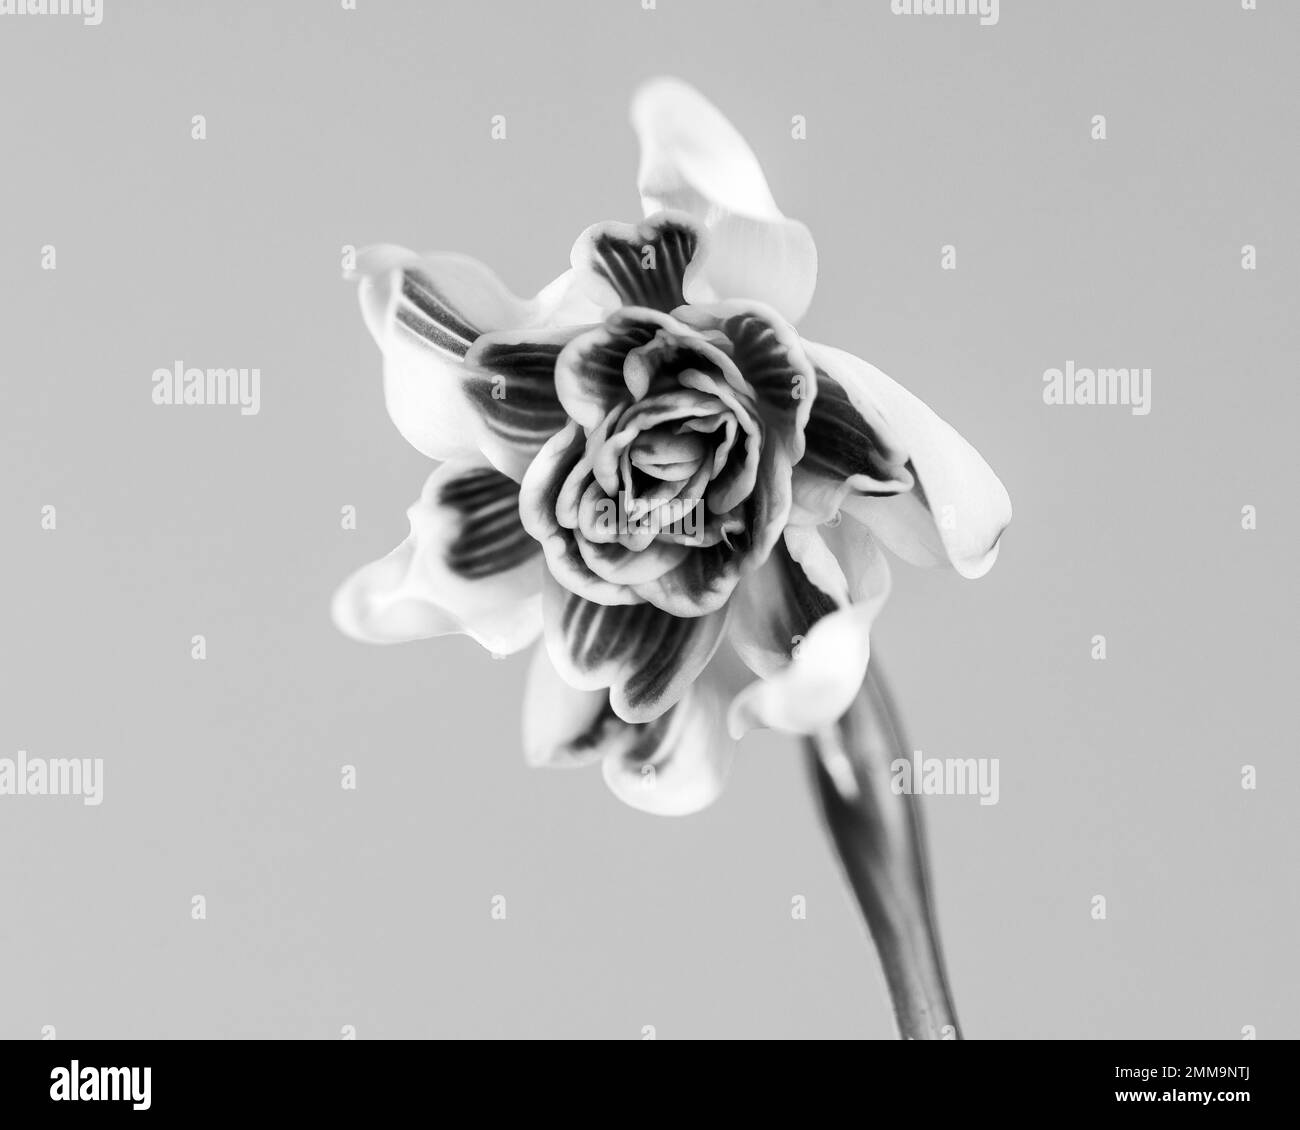 Spring snowflake (Leucojum vernum), Germany Stock Photo